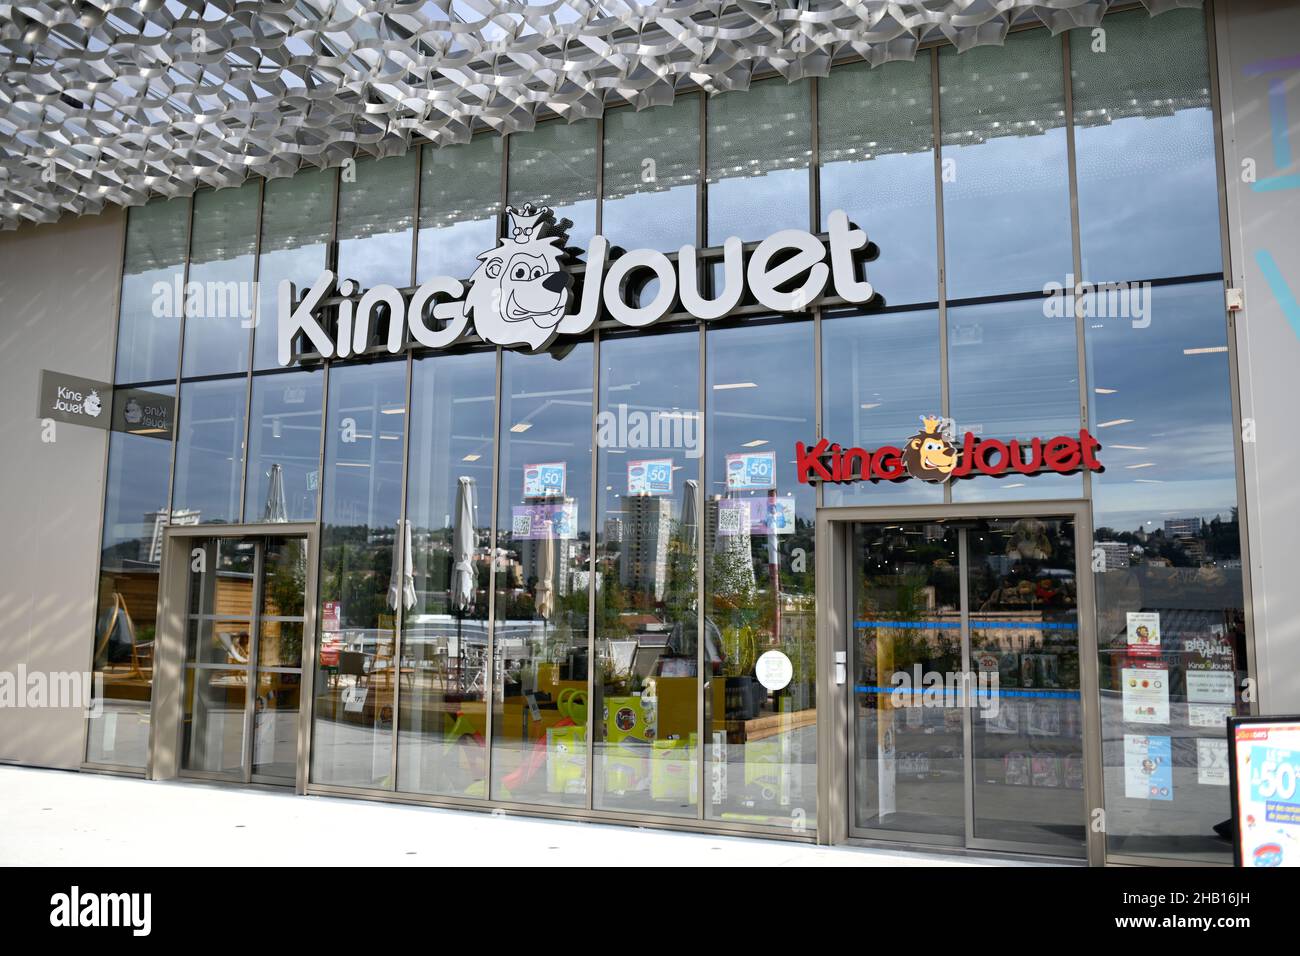 Tienda de juguetes King Jouet en el centro comercial “Steel” en  Saint-Etienne (sudeste de Francia Fotografía de stock - Alamy